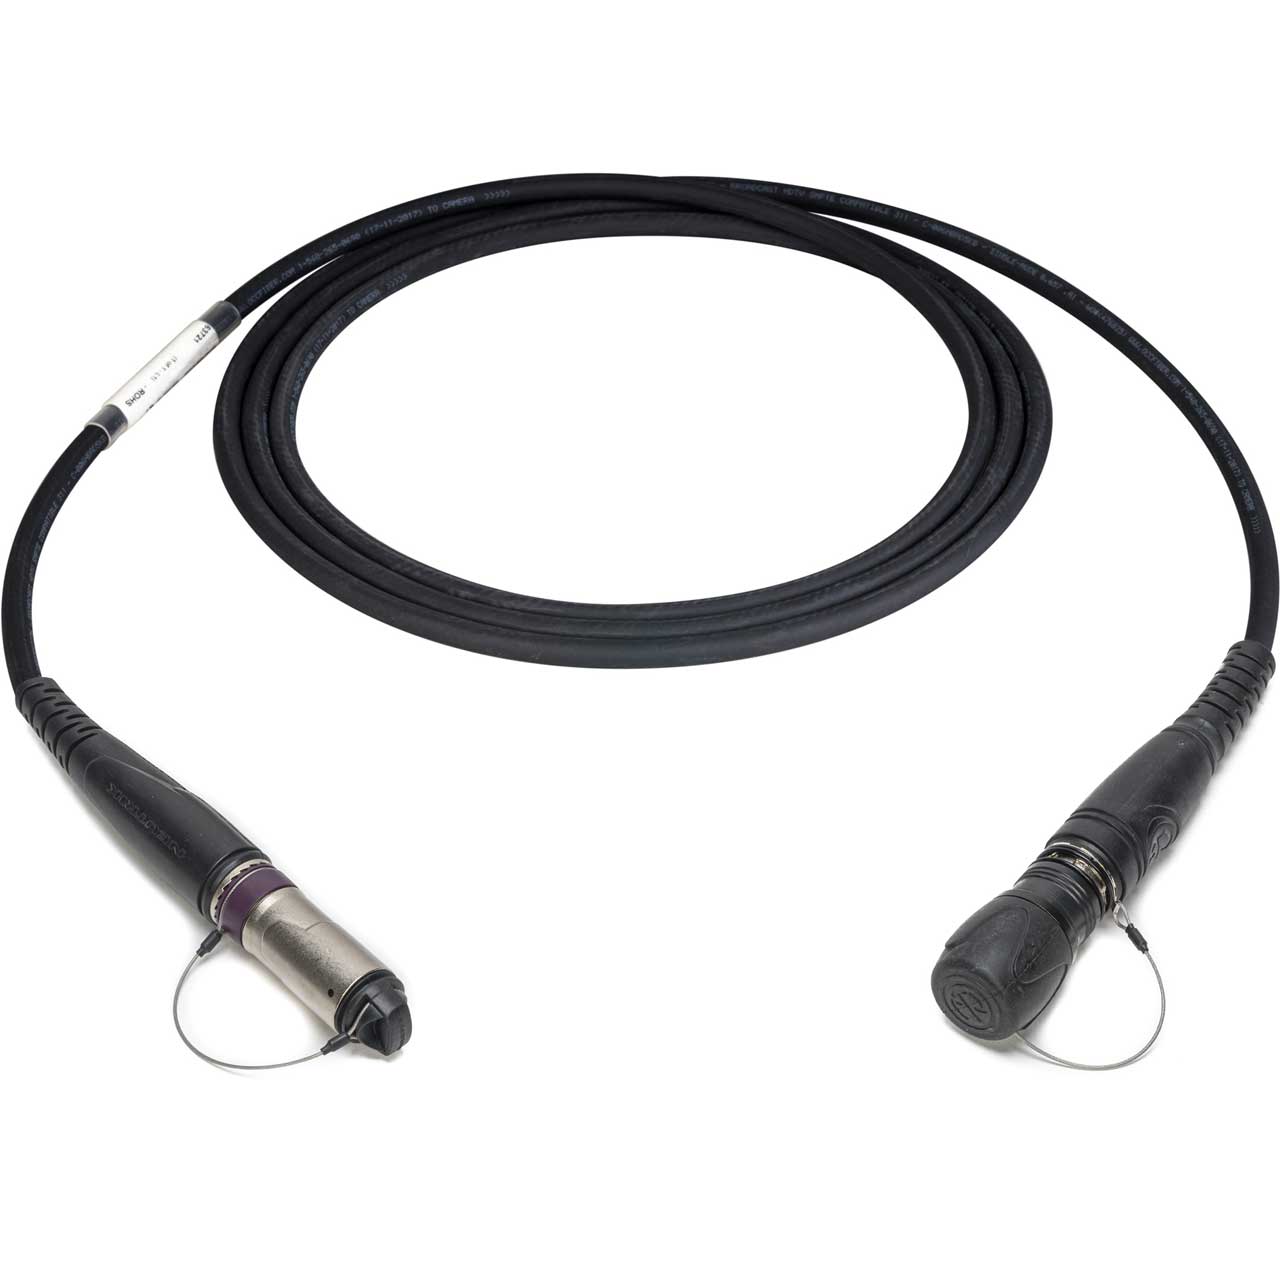 Camplex HF-OC2NOF-1000 opticalCON DUO to DRAGONFLY Female SMPTE 311 SM Fiber Optic Cable - 1000 Foot HF-OC2NOF-1000